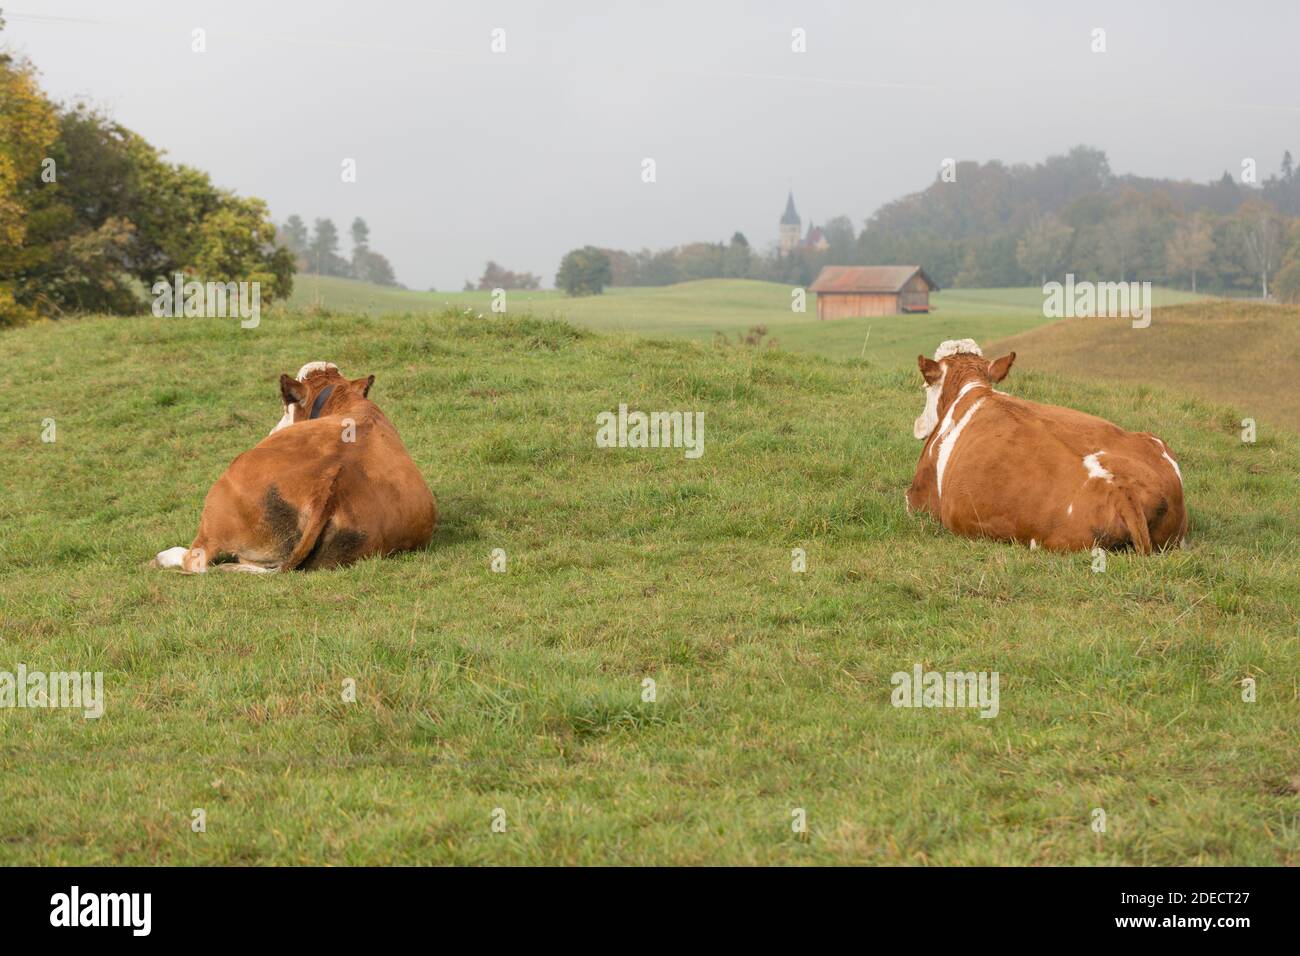 Vue sur le dos de deux vaches laitières couchées. Les deux prennent un repos sur un pâturage vert. Paysage idyllique, symbole de l'agriculture, du bétail et de l'écologie Banque D'Images